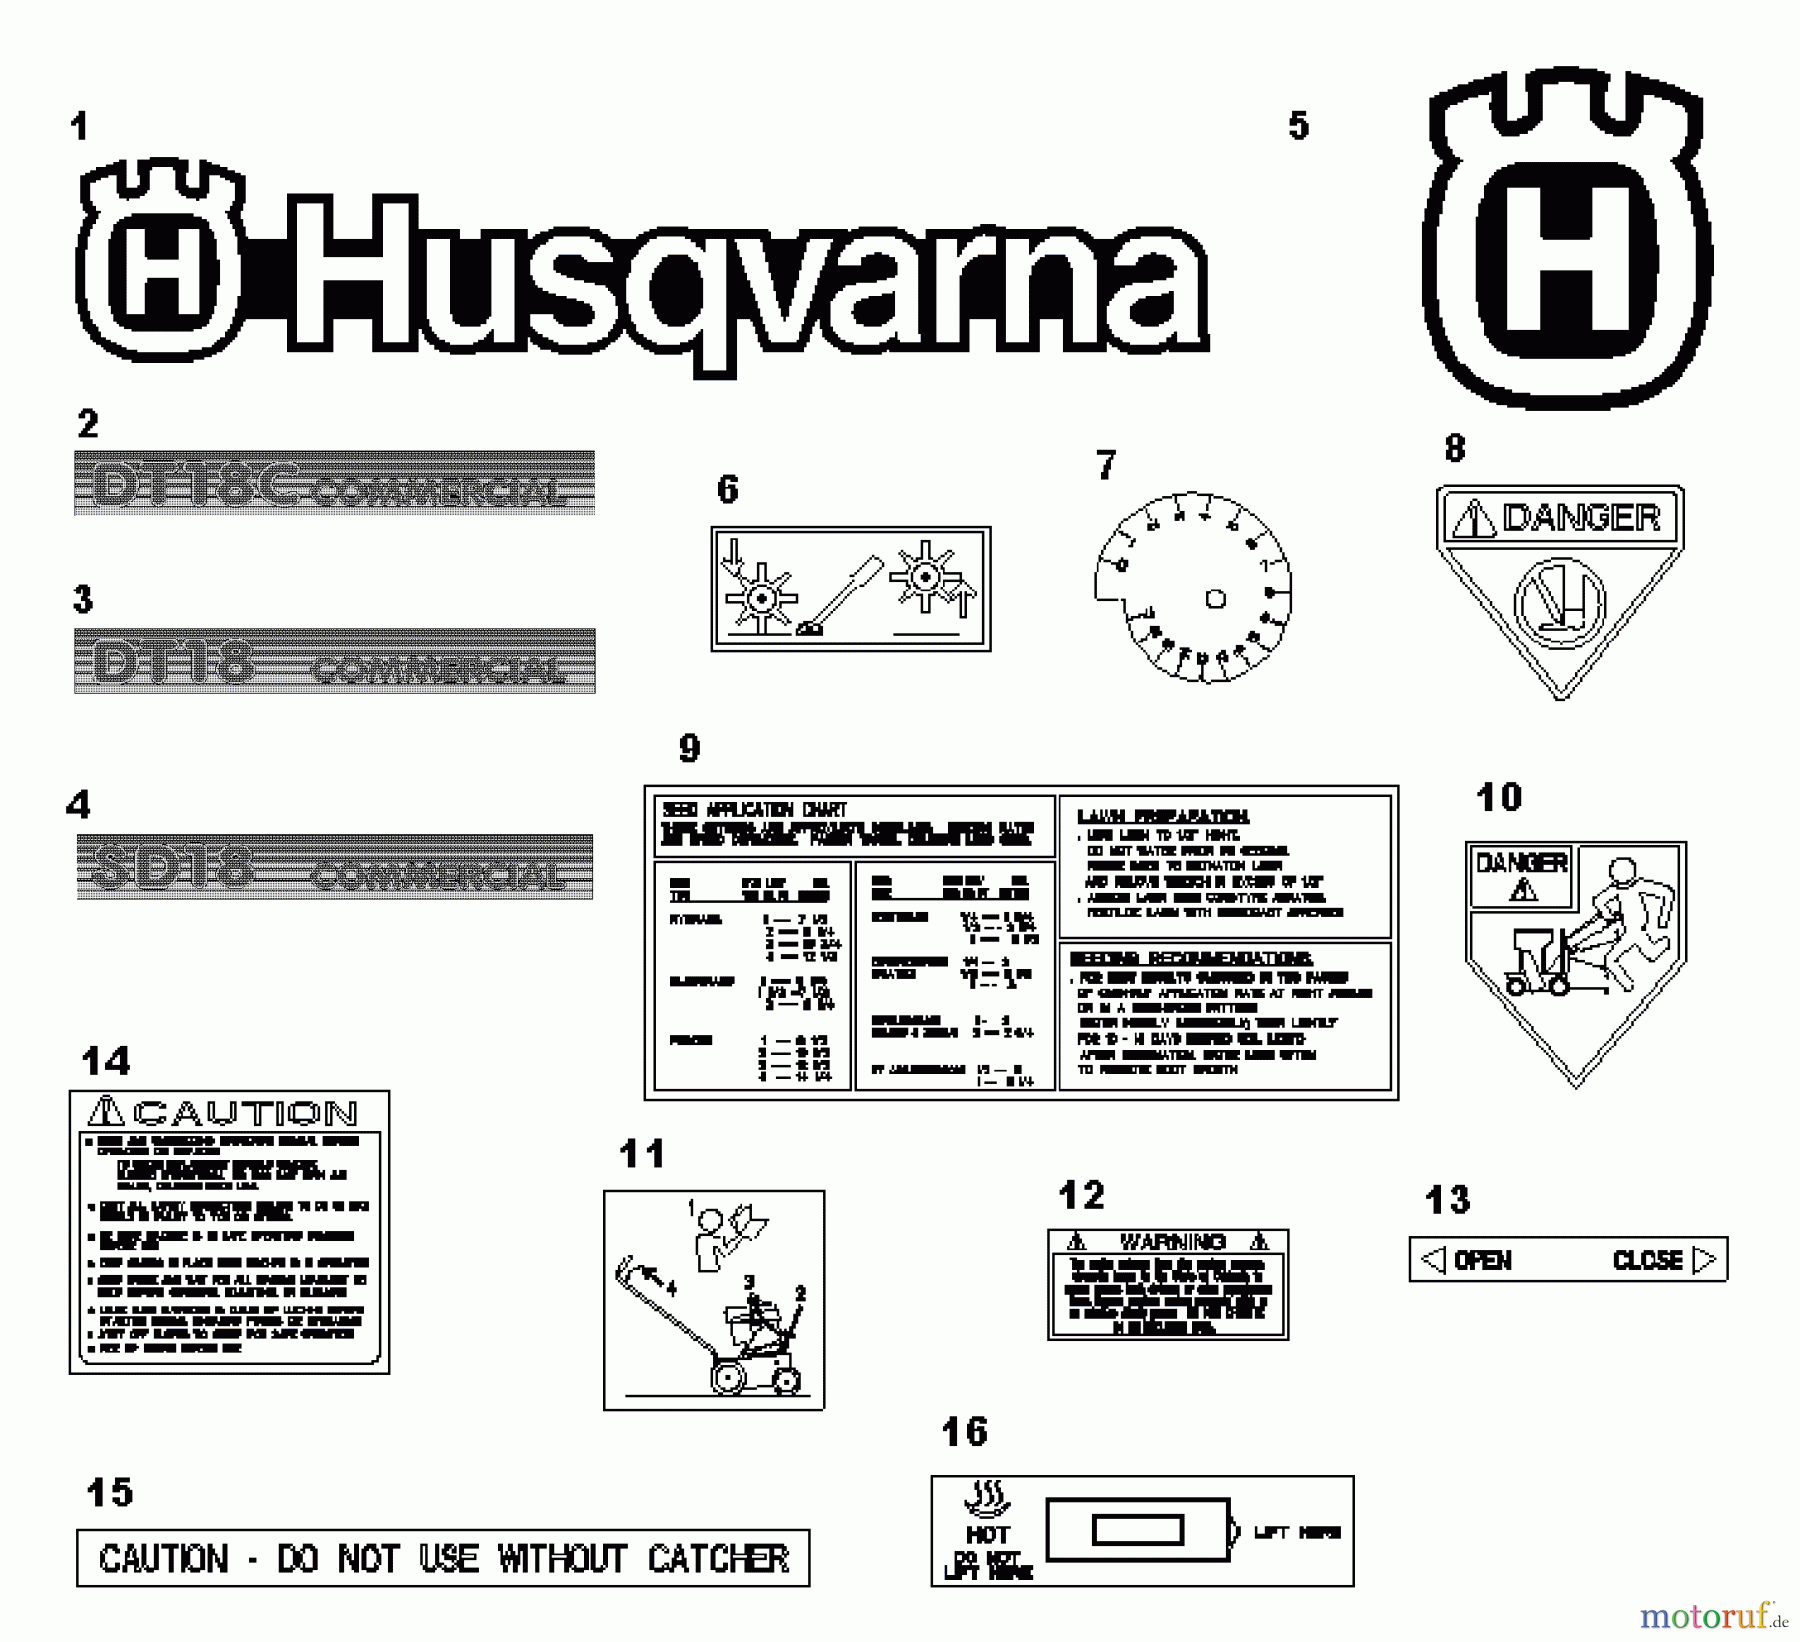  Husqvarna Belüfter / Vertikutierer / Rechen DT 18 C (968981005) - Husqvarna Dethatcher (2000-12 & After) Dethatcher / Seeder Decals